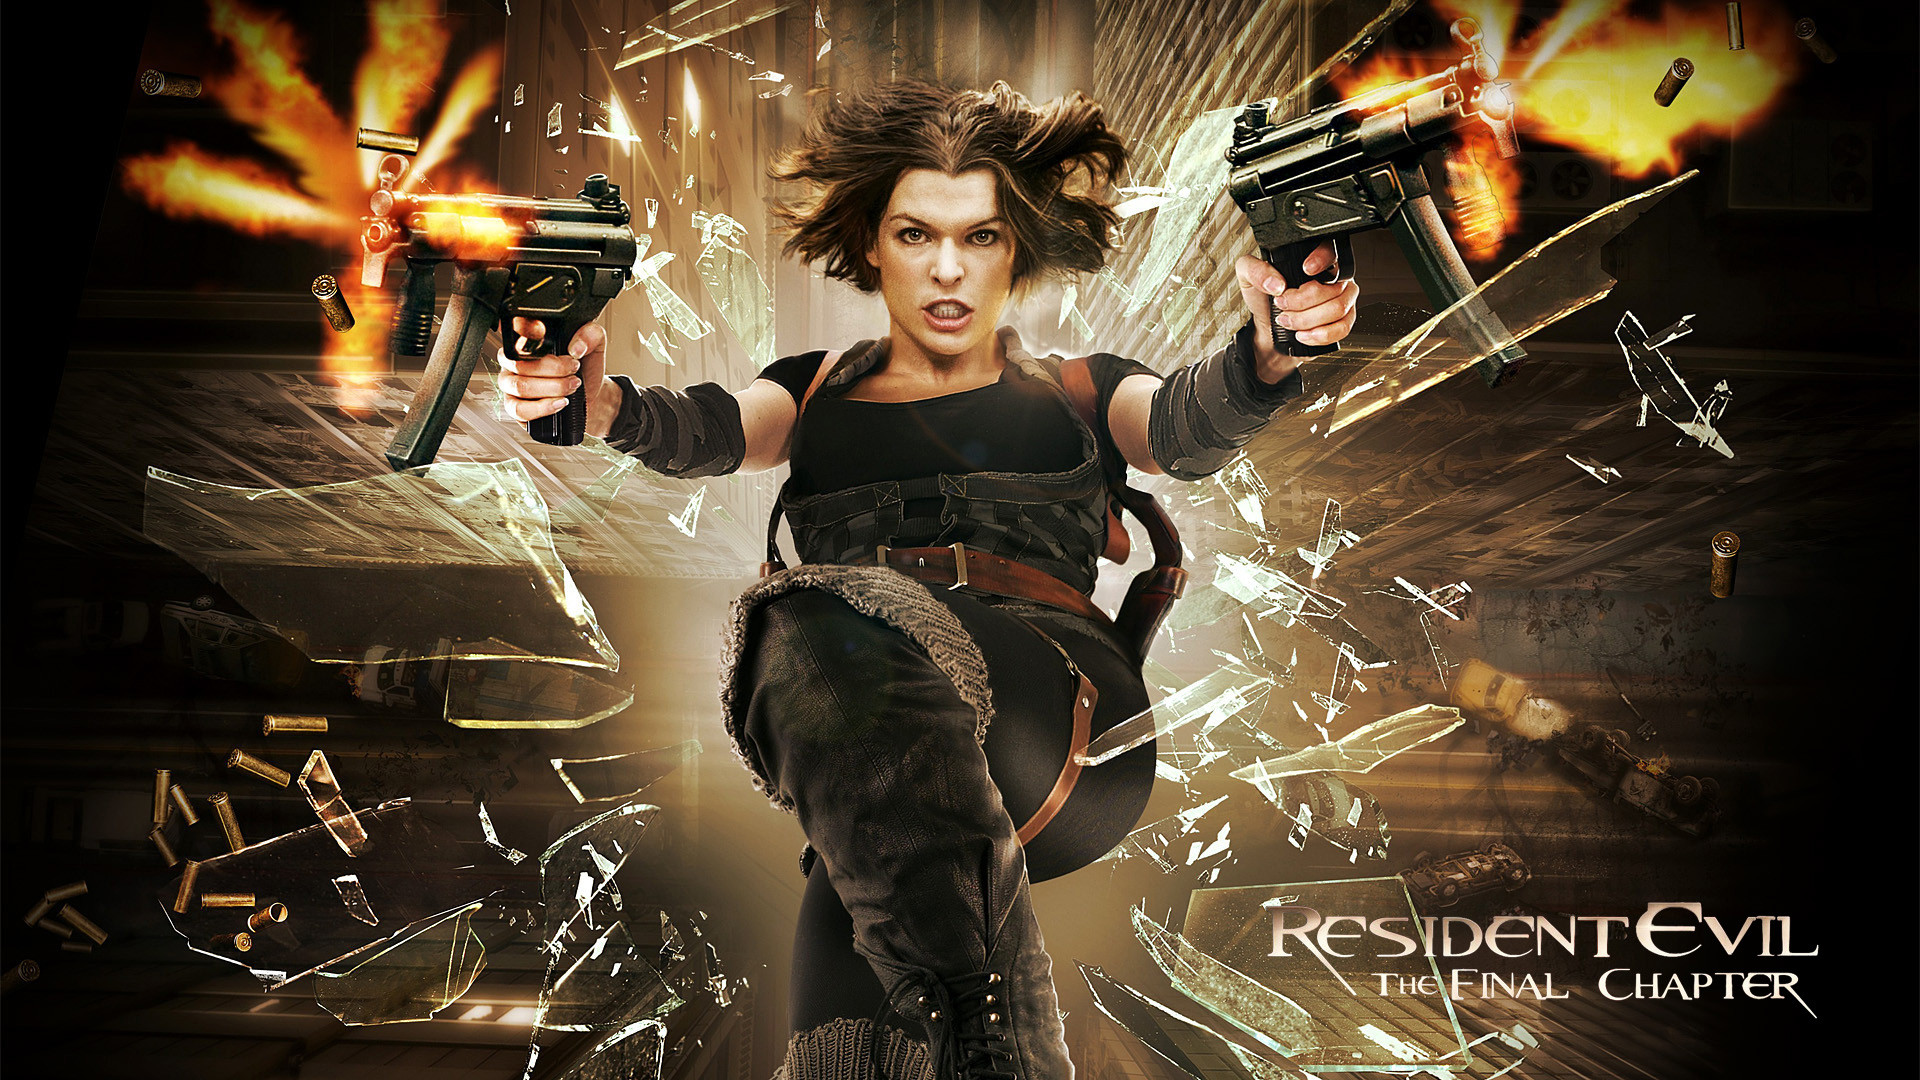 Resident Evil 6 wallpaper HD film poster 2017